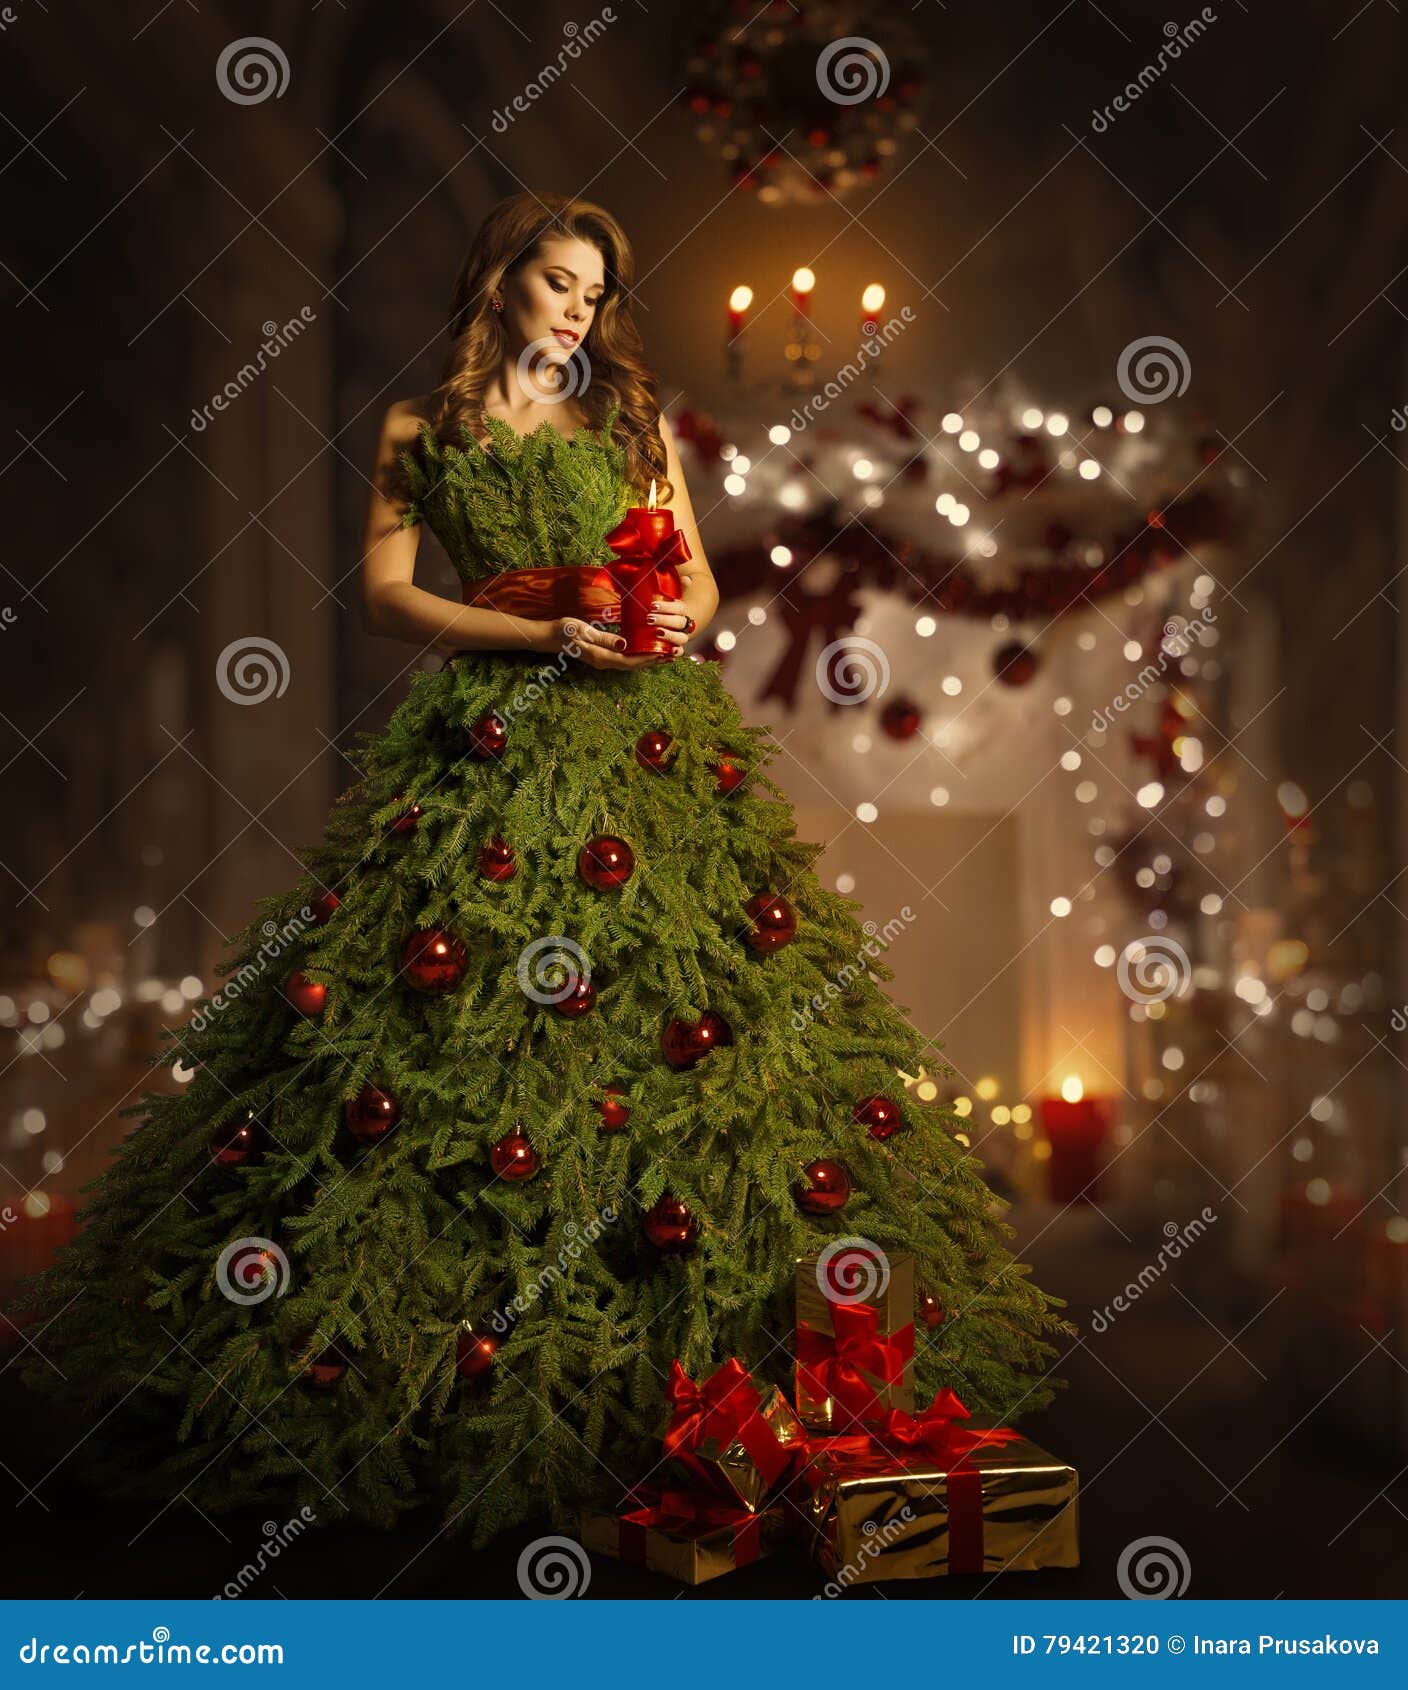 Vestido Del árbol De Navidad De La Mujer, Modelo De Moda En Traje Del  Vestido De Navidad Foto de archivo - Imagen de elegante, nuevo: 79421320